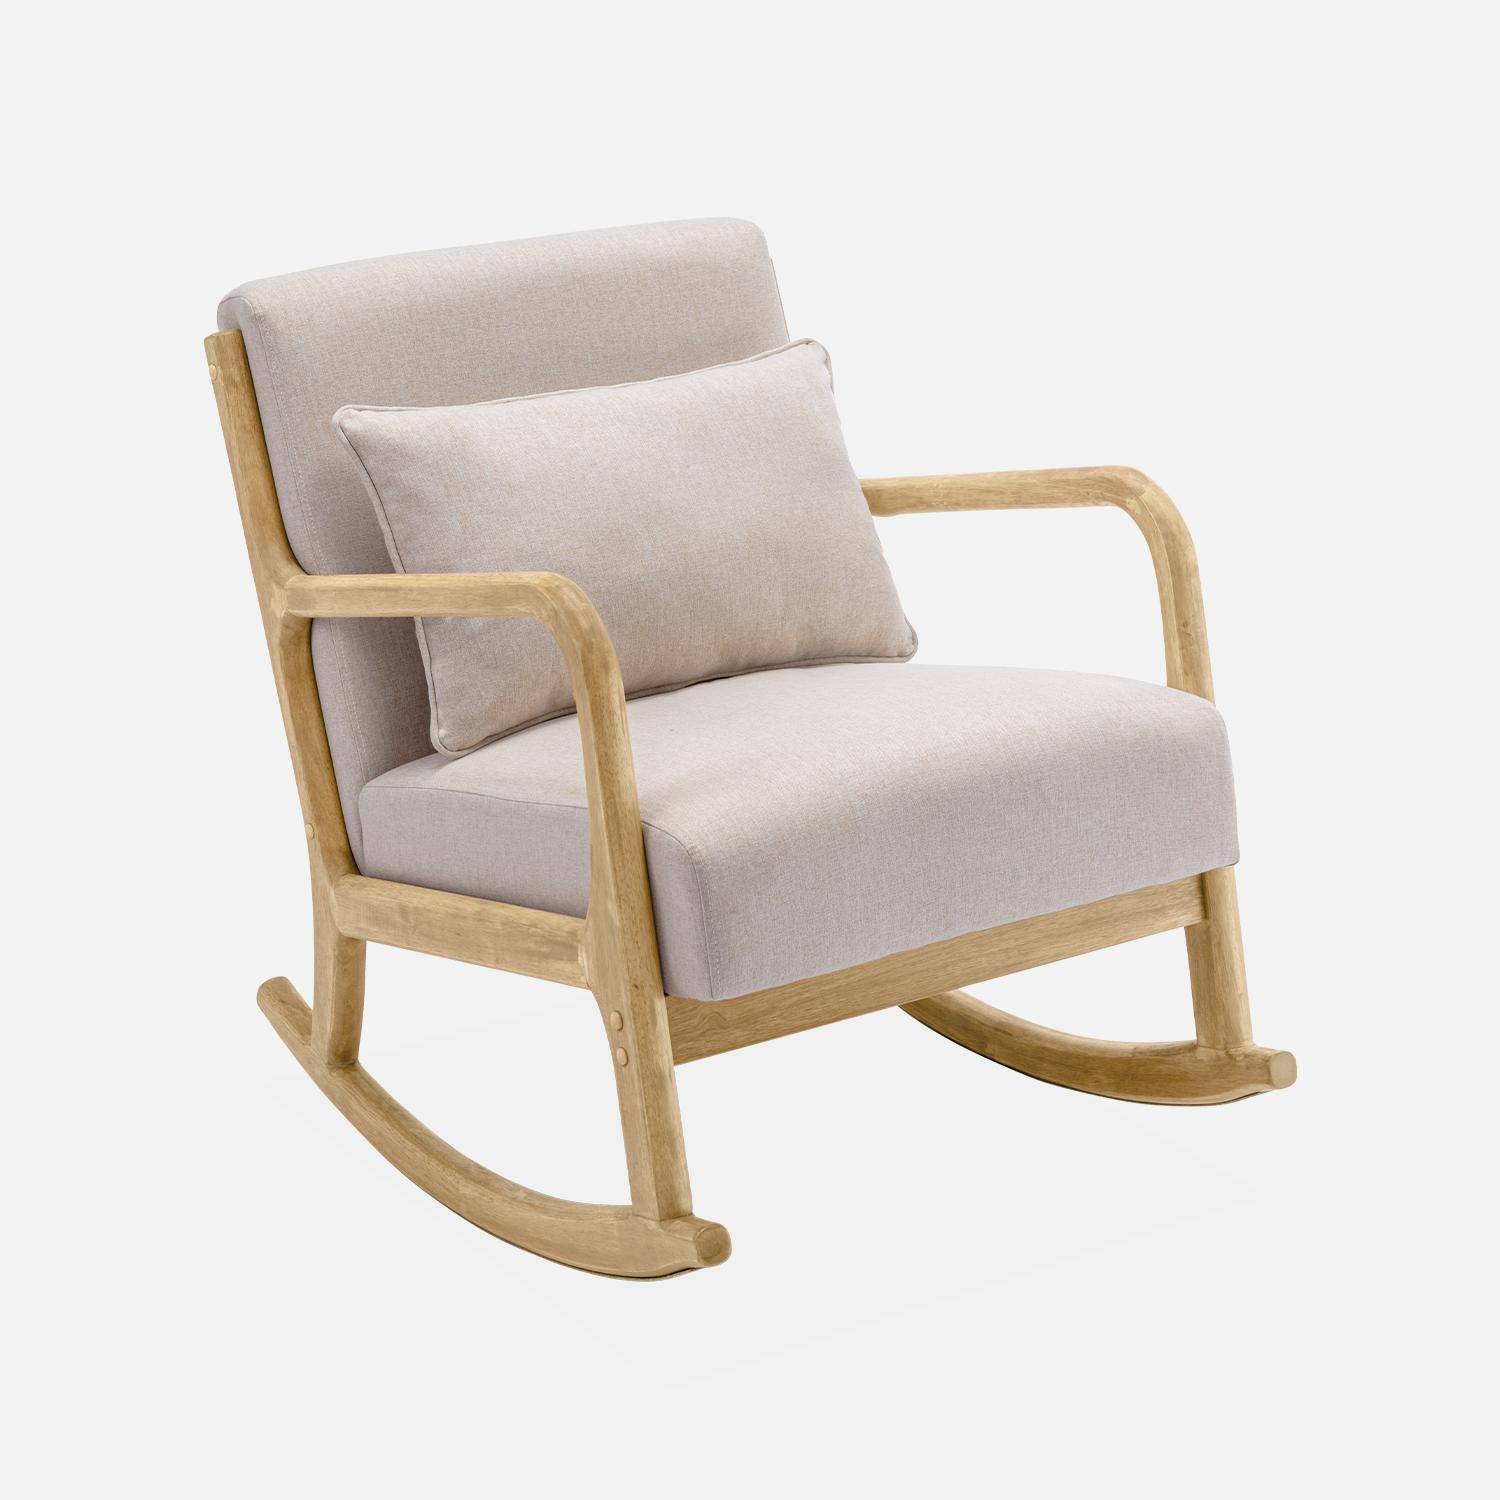 Fauteuil à bascule design en bois et tissu, 1 place, rocking chair scandinave, beige Photo3